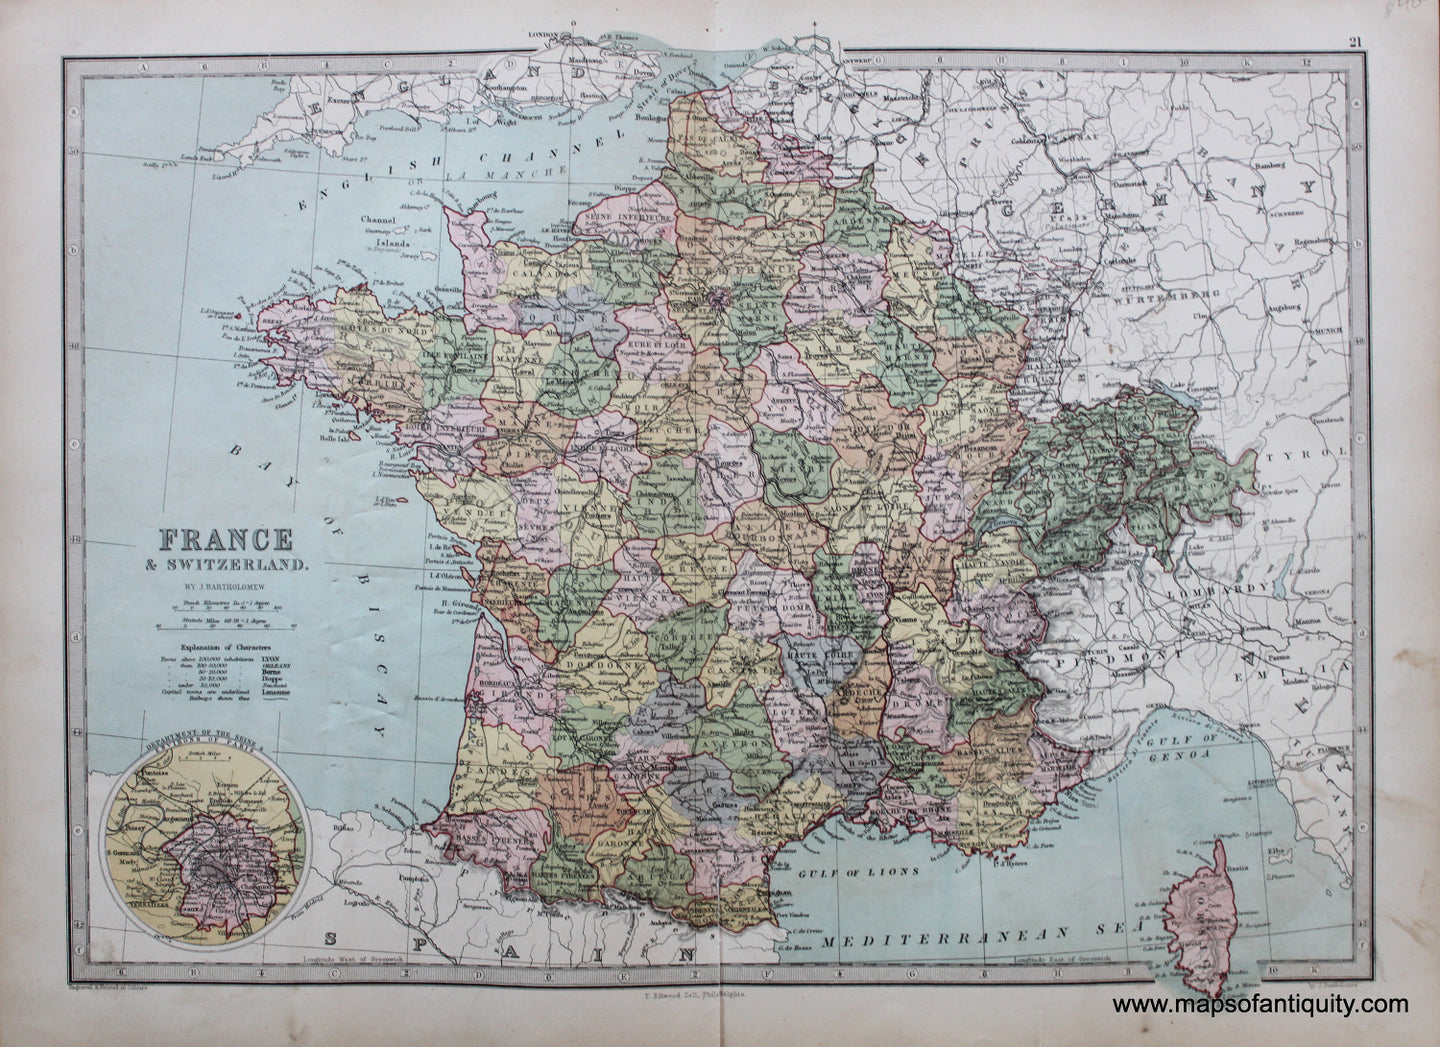 Antique-Printed-Color-Map-France-&-Switzerland-Europe-France-Switzerland-1873-J.-Bartholomew-Maps-Of-Antiquity